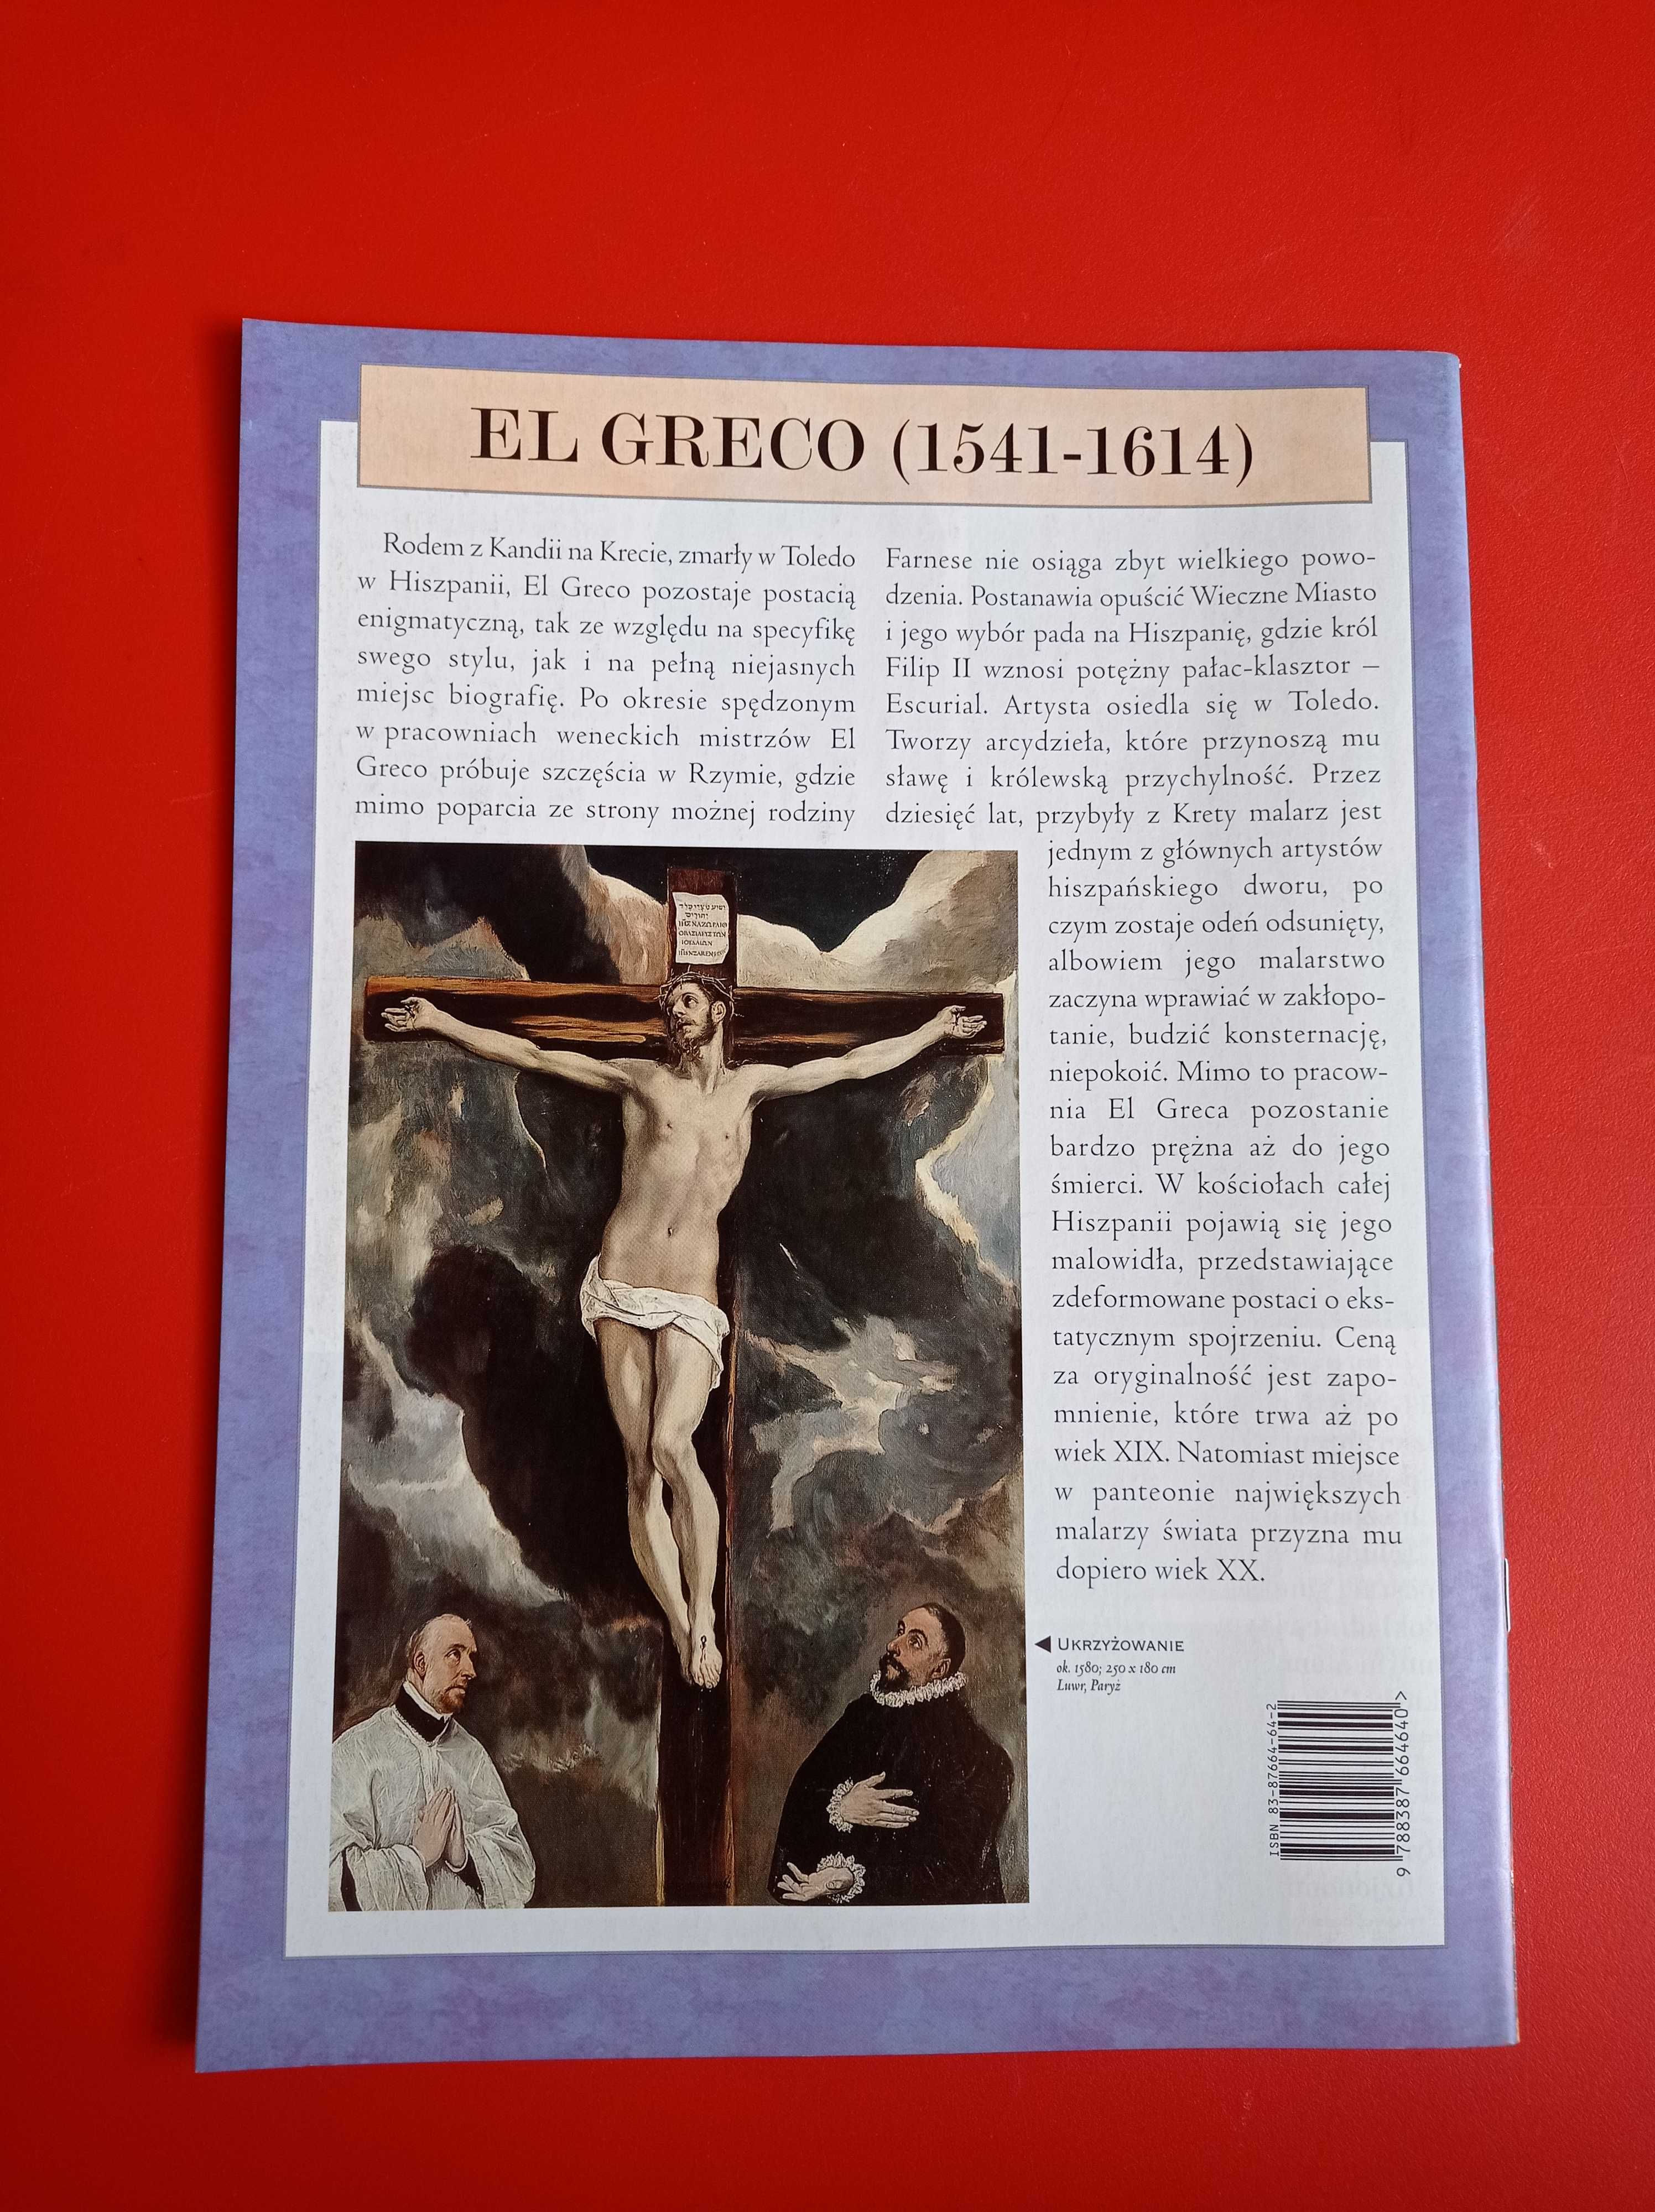 Wielcy malarze nr 64, El Greco